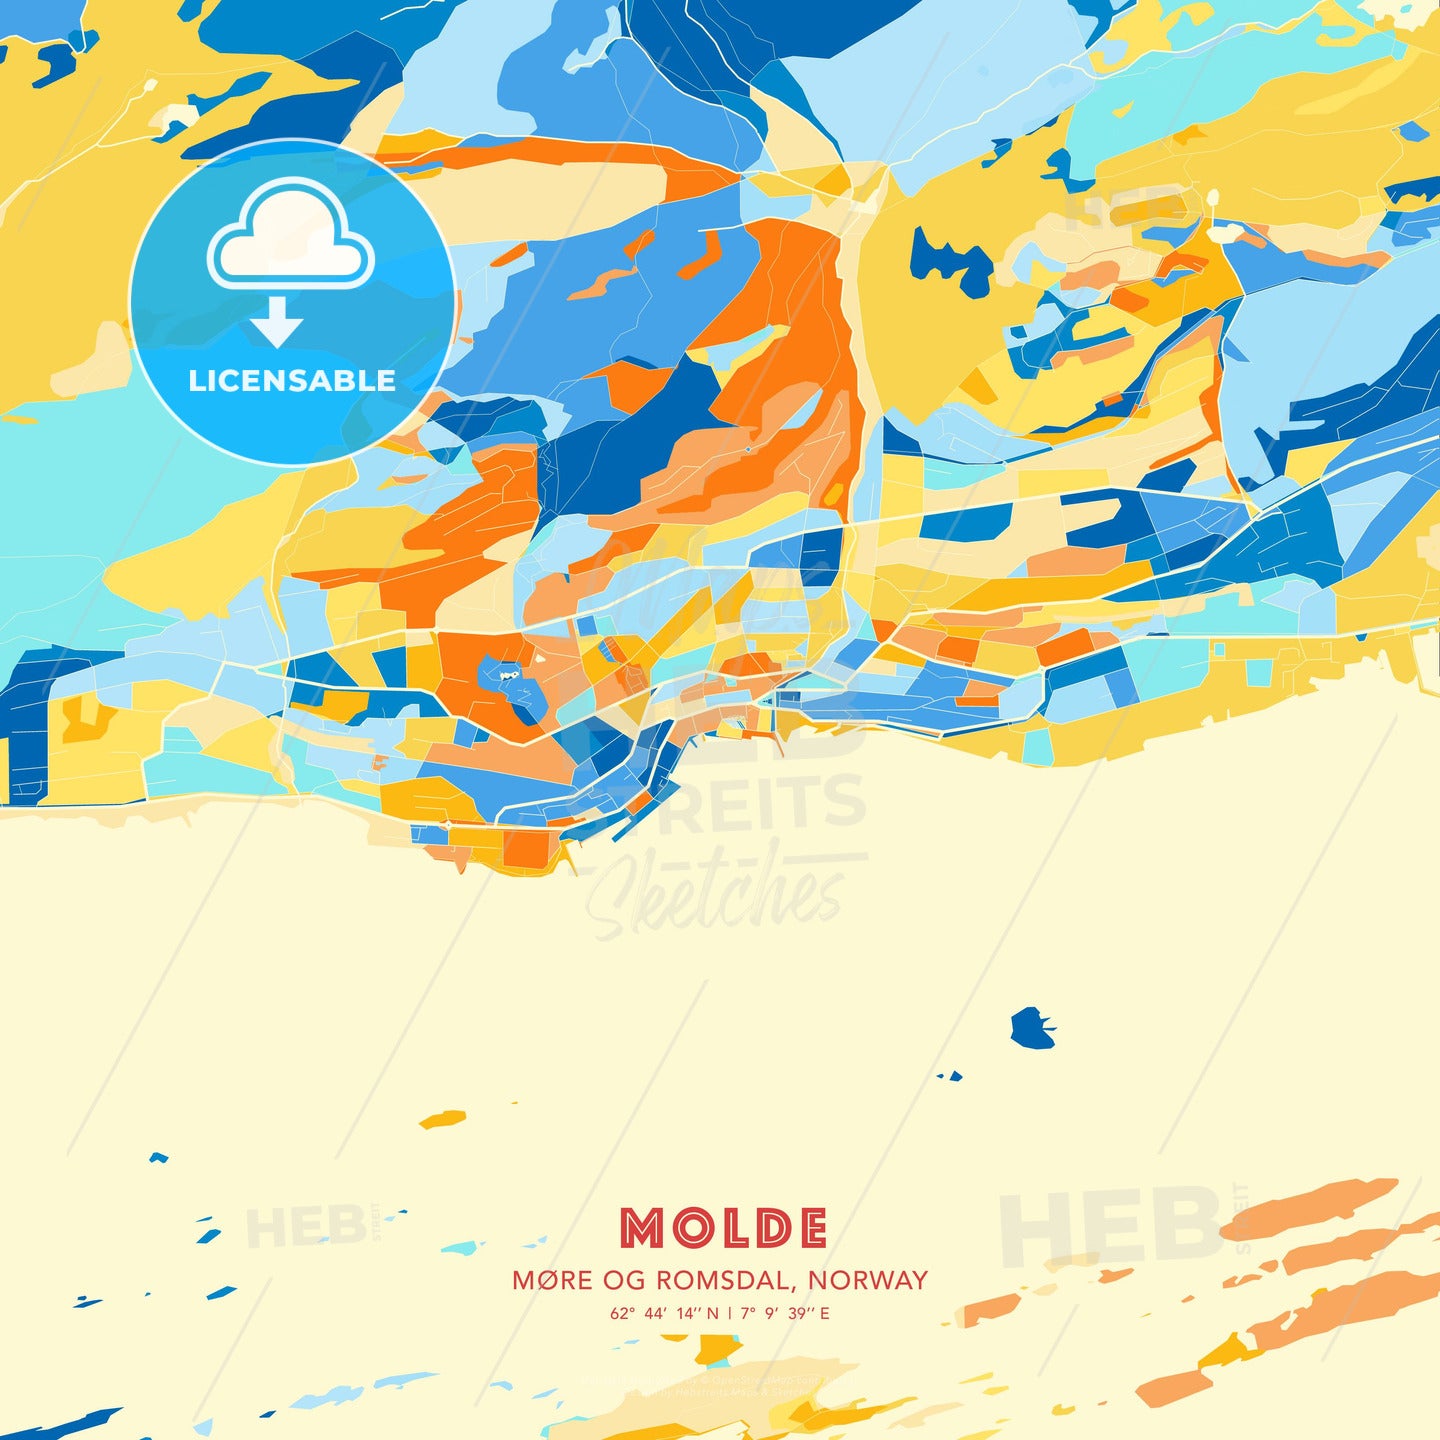 Molde, Møre og Romsdal, Norway, map - HEBSTREITS Sketches